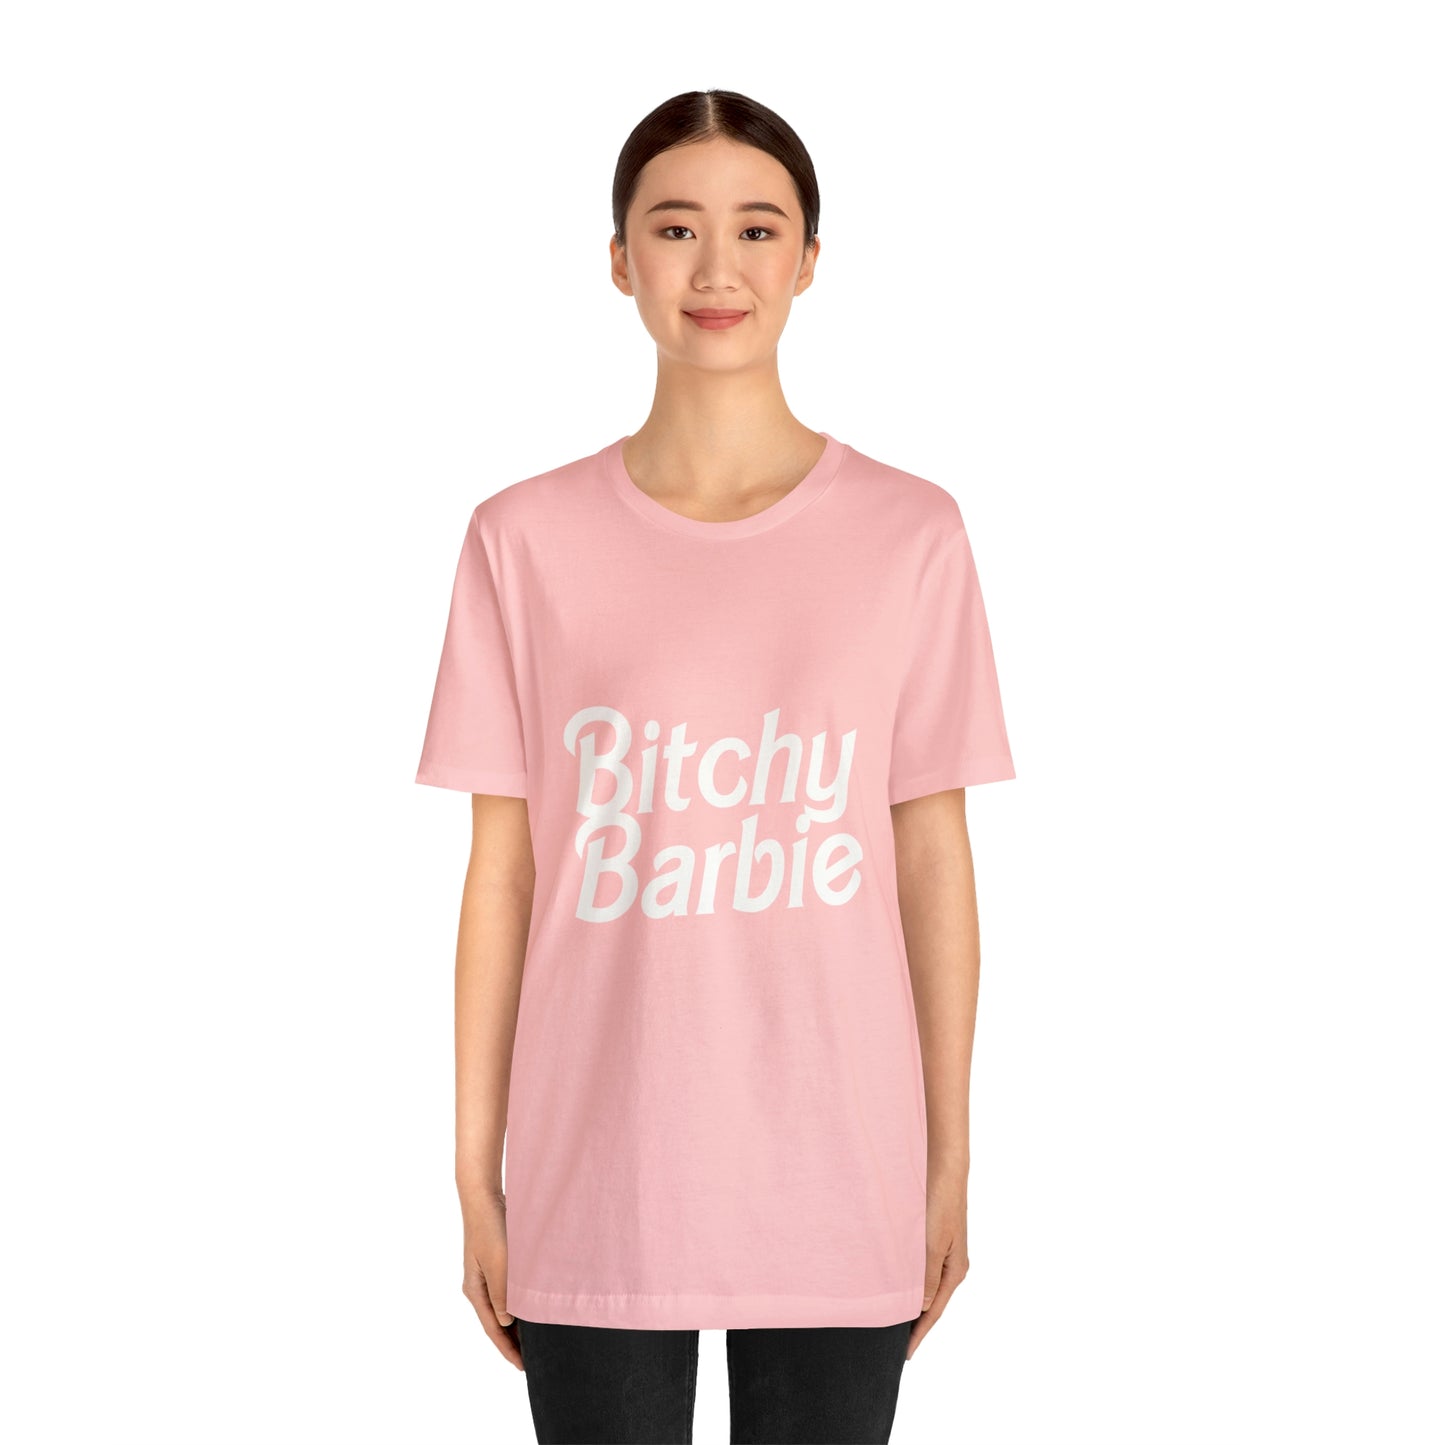 Bitchy Barbie